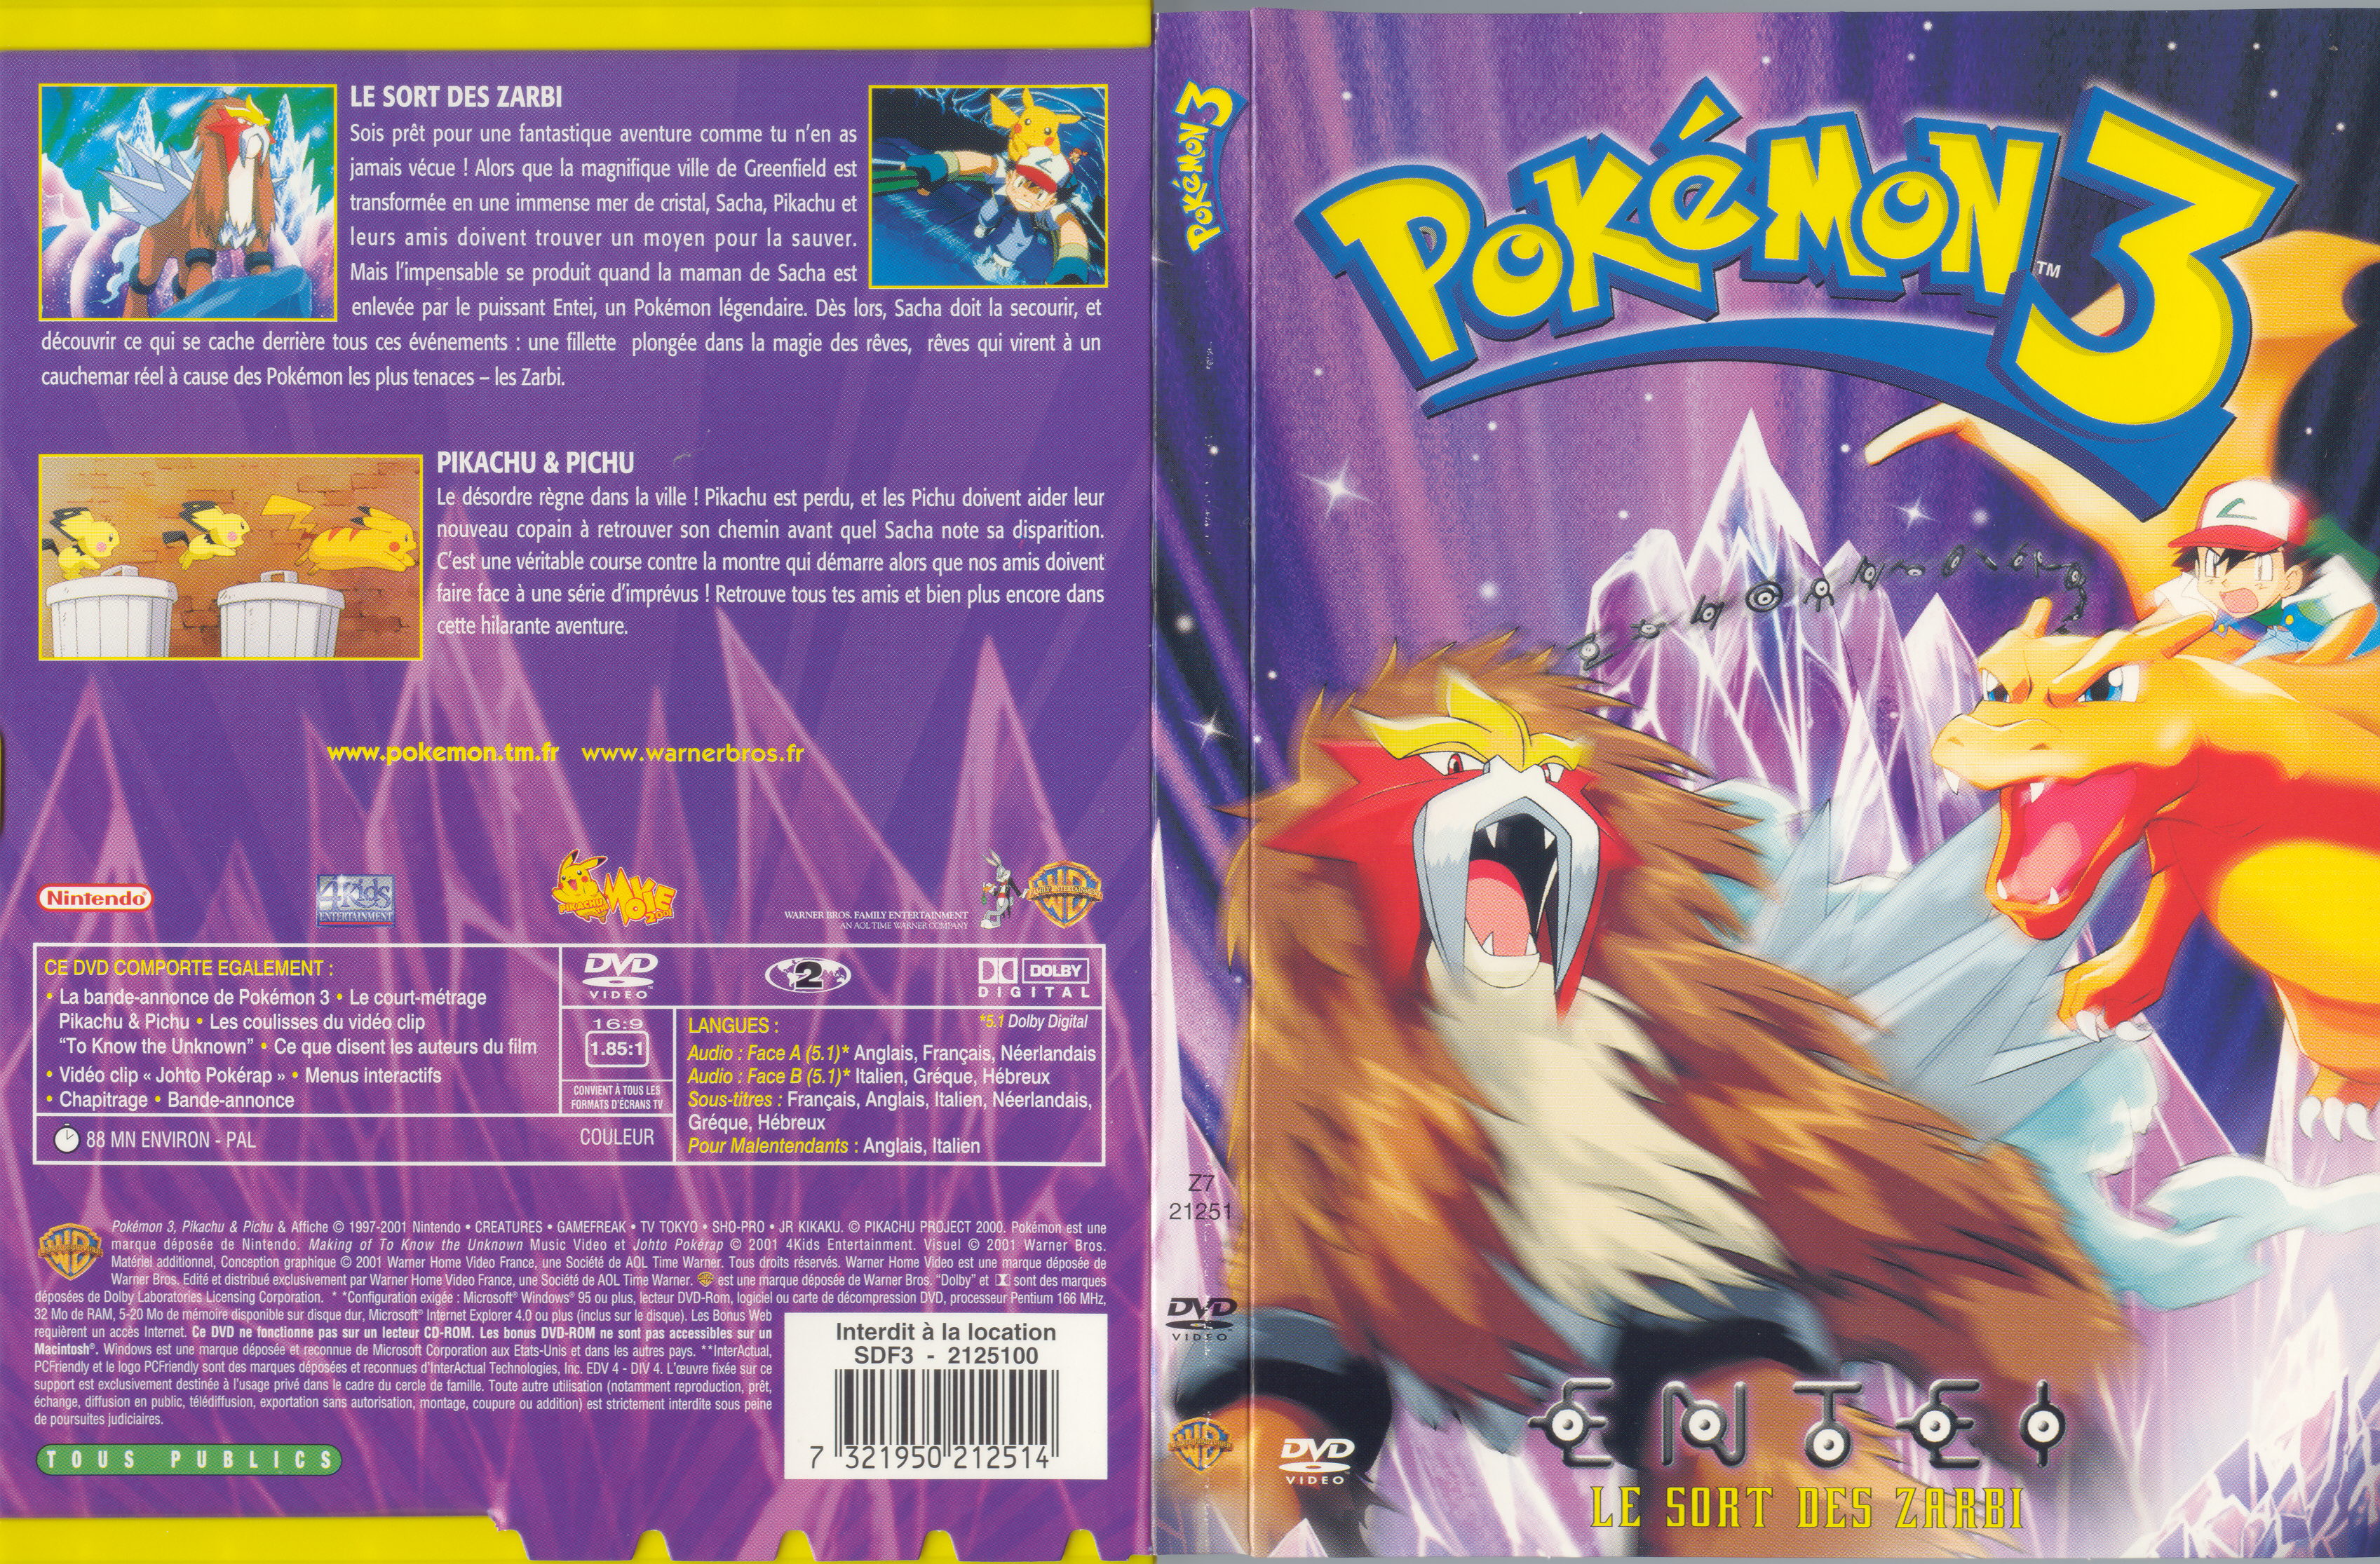 Jaquette DVD Pokemon 3 le sort des zarbi